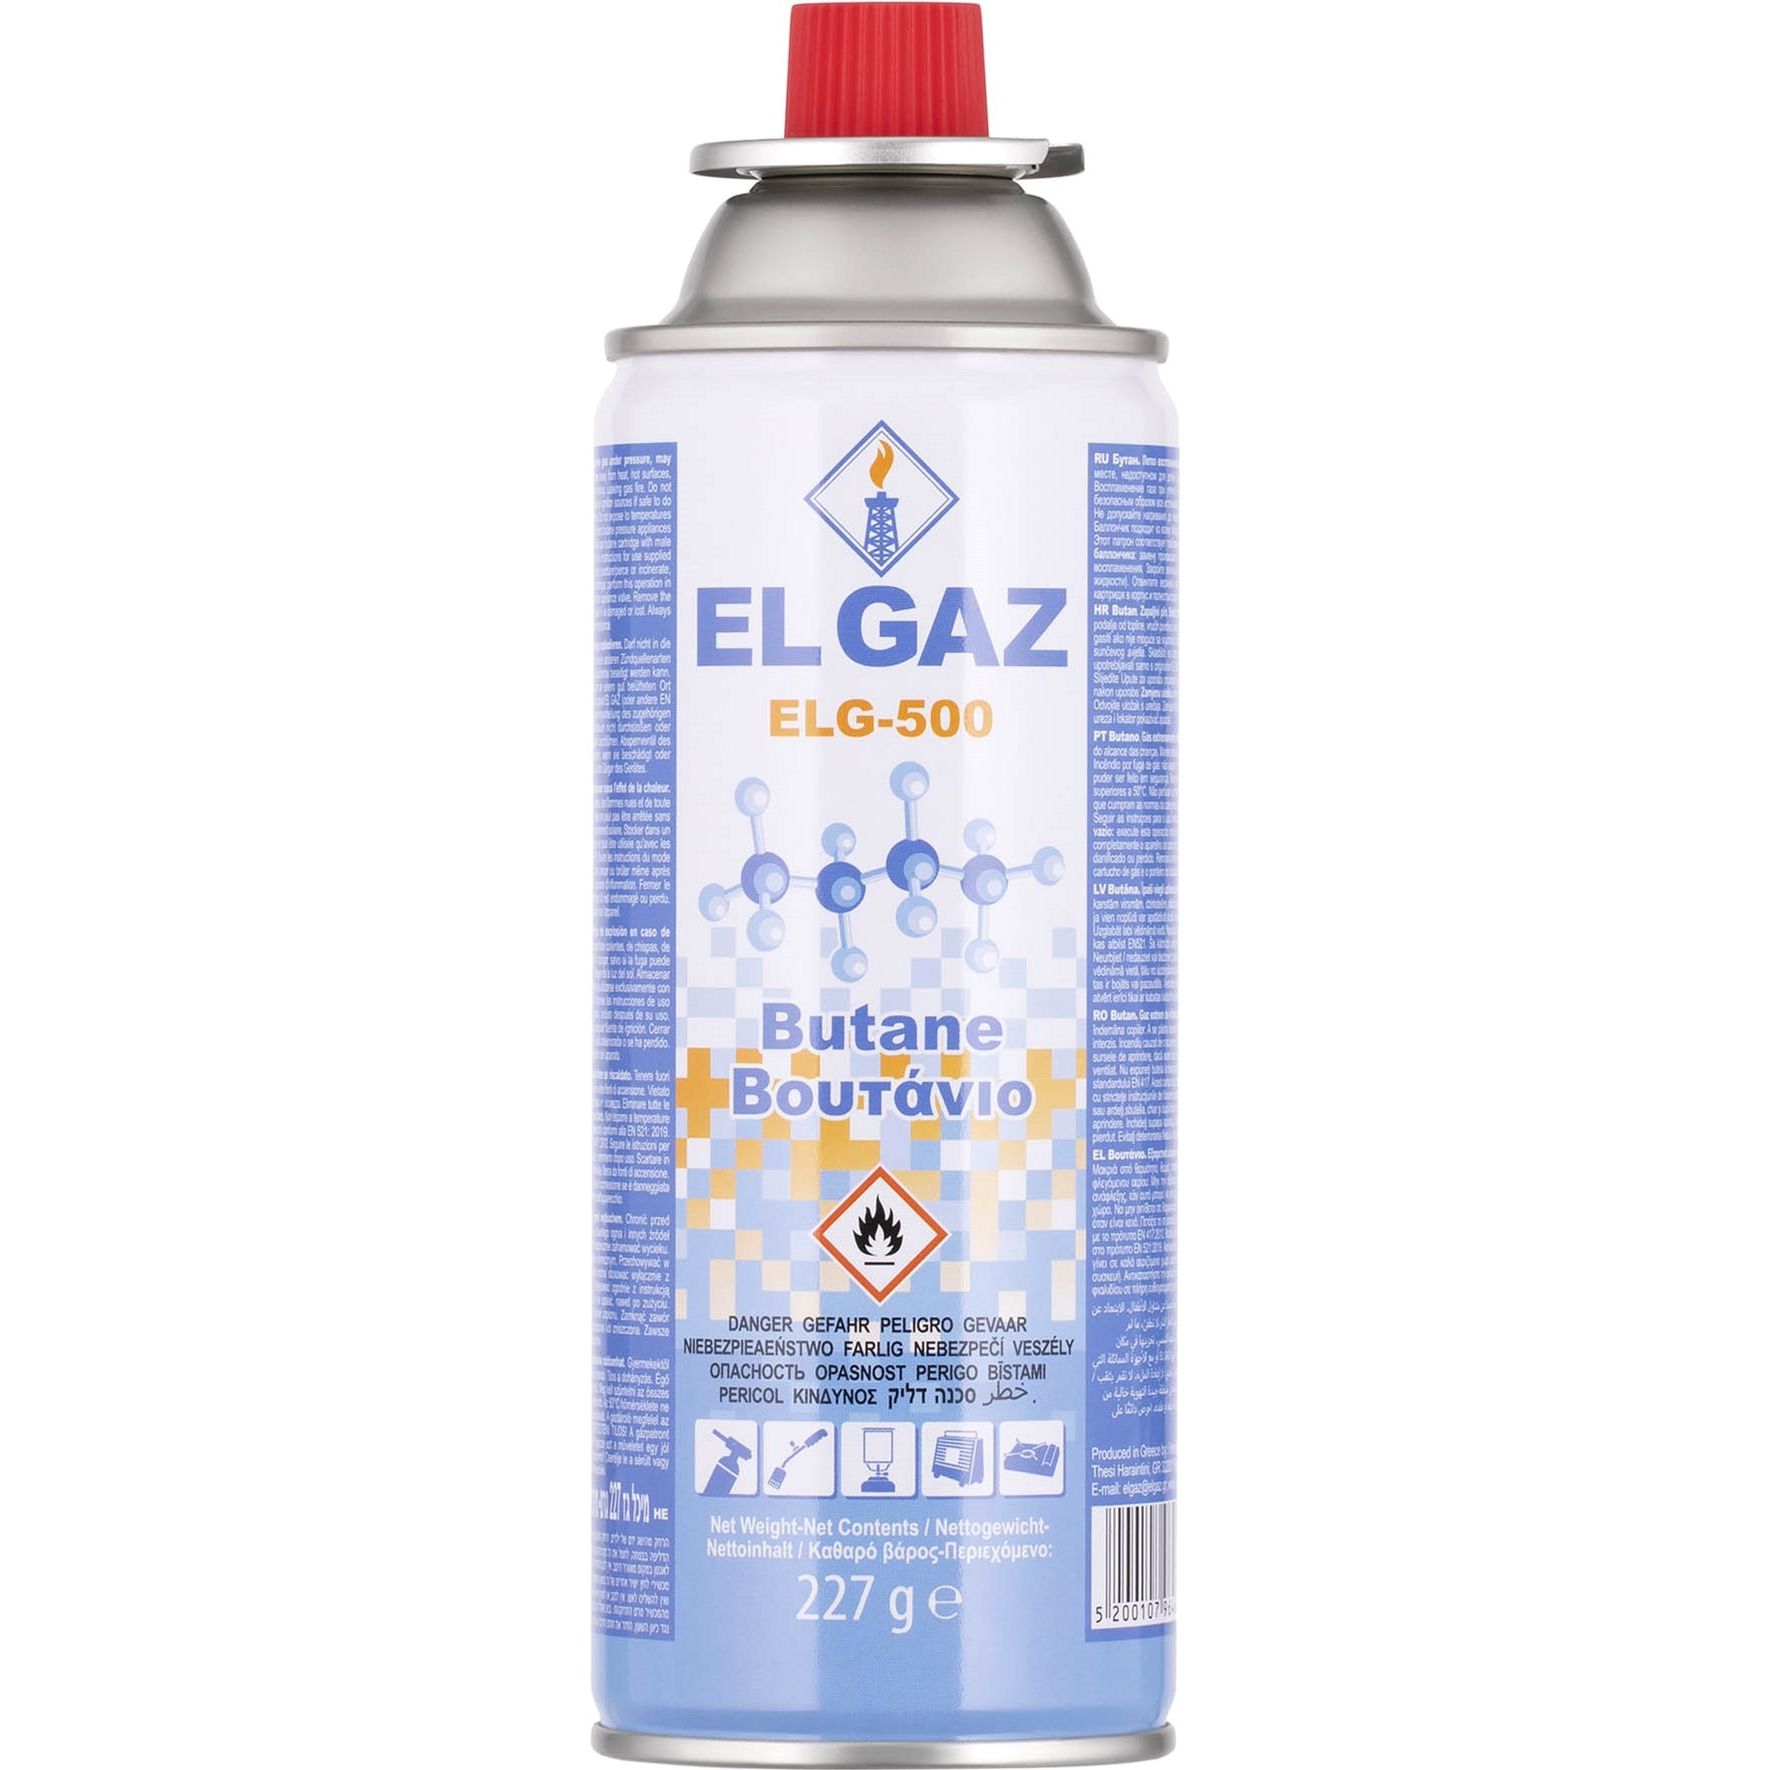 Балон-картридж газовий El Gaz ELG-500 цанговий бутан 5.448 кг (227 г х 24 шт.) (104ELG-500-24) - фото 2